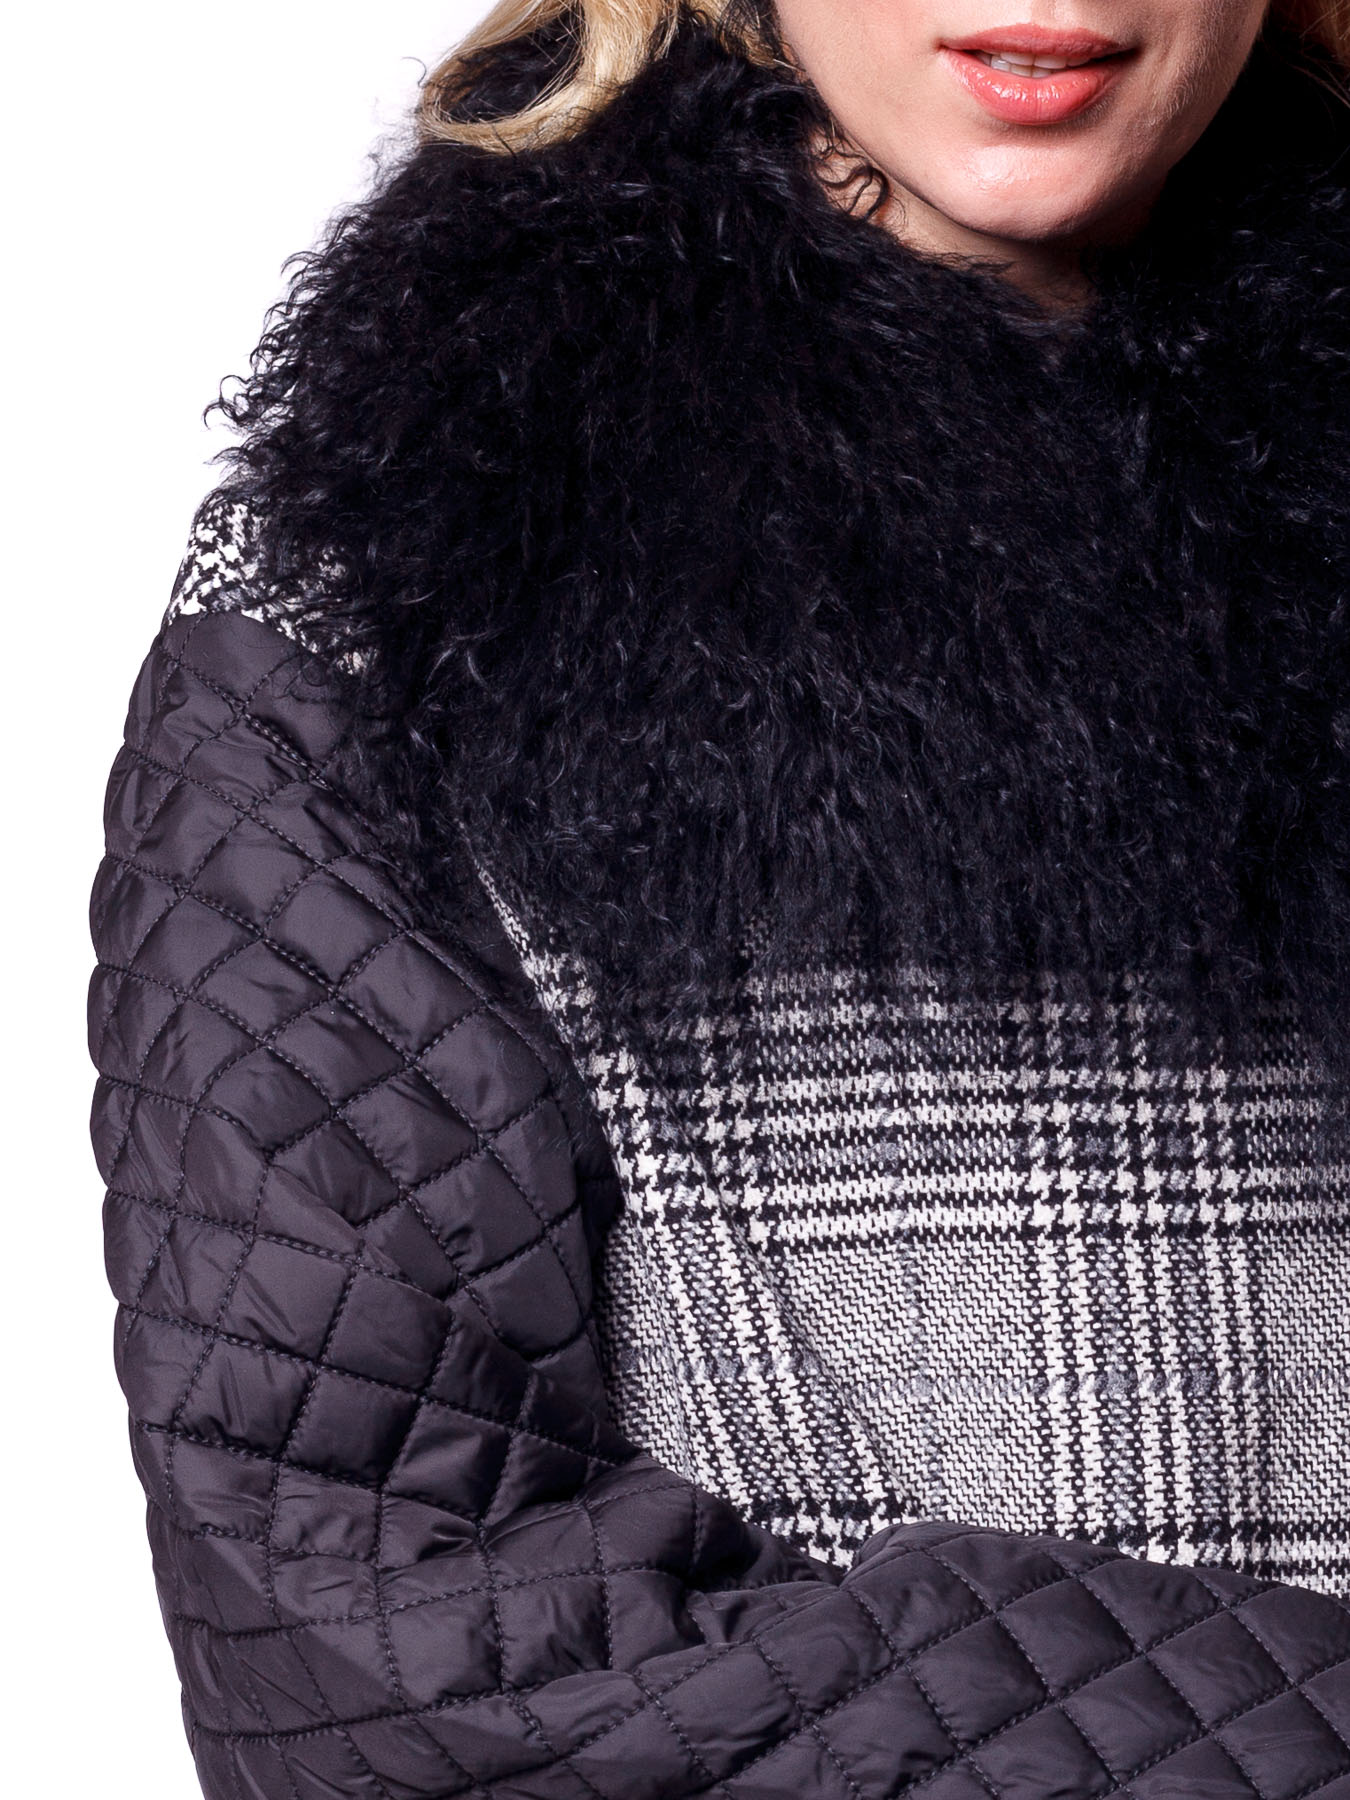 Длинное болоньевое/шерстяное утеплённое стёганное пальто с накладными карманами и натуральным мехом